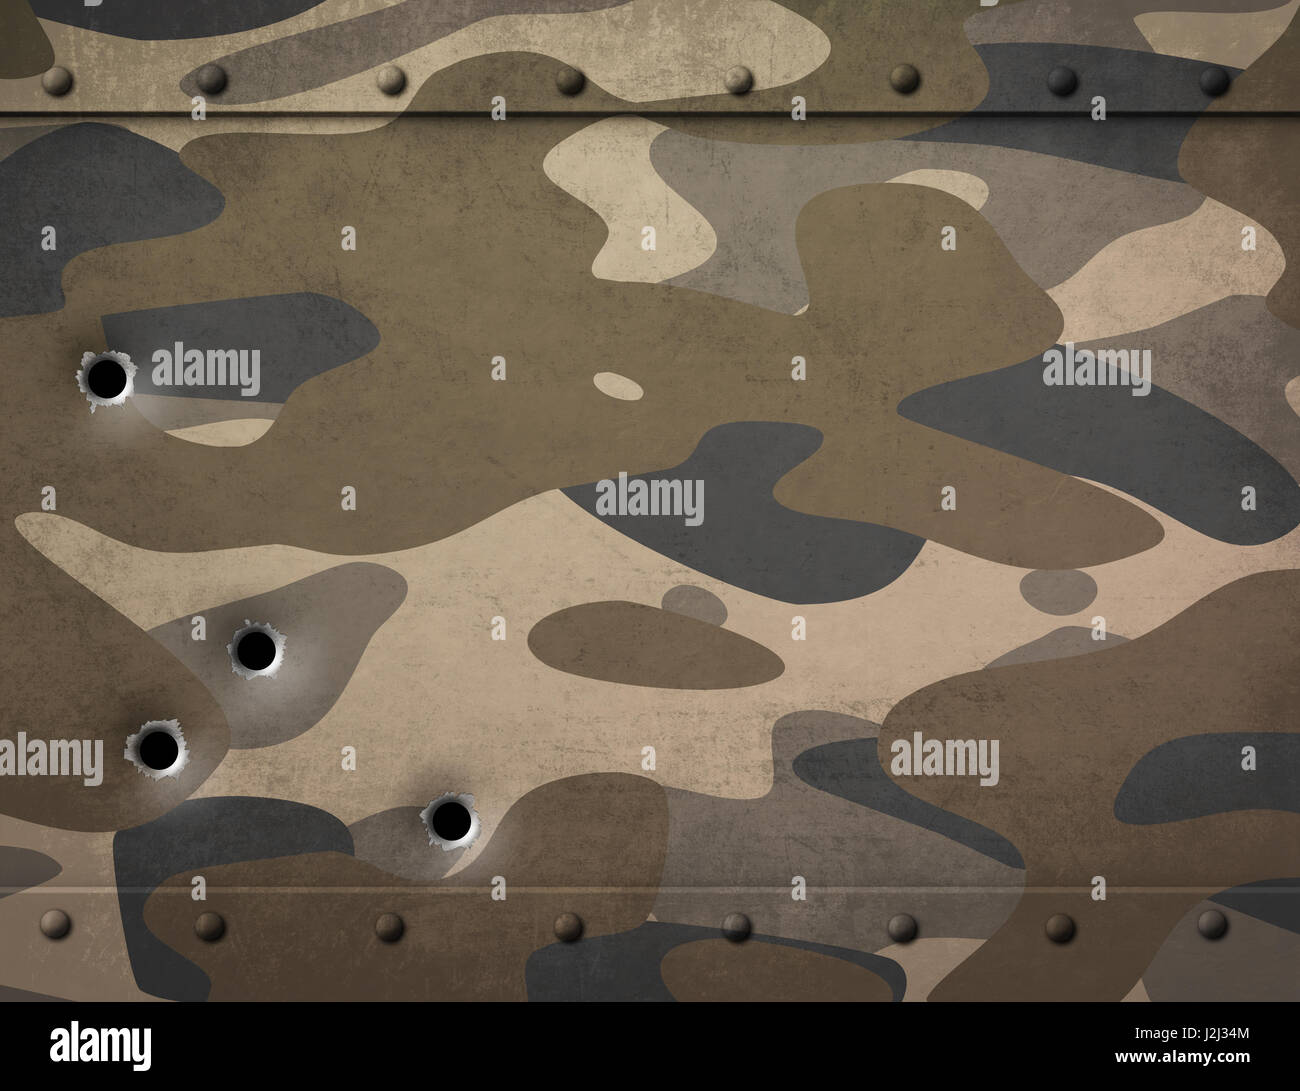 Métal militaire de camouflage et trous de balle 3d illustration Banque D'Images